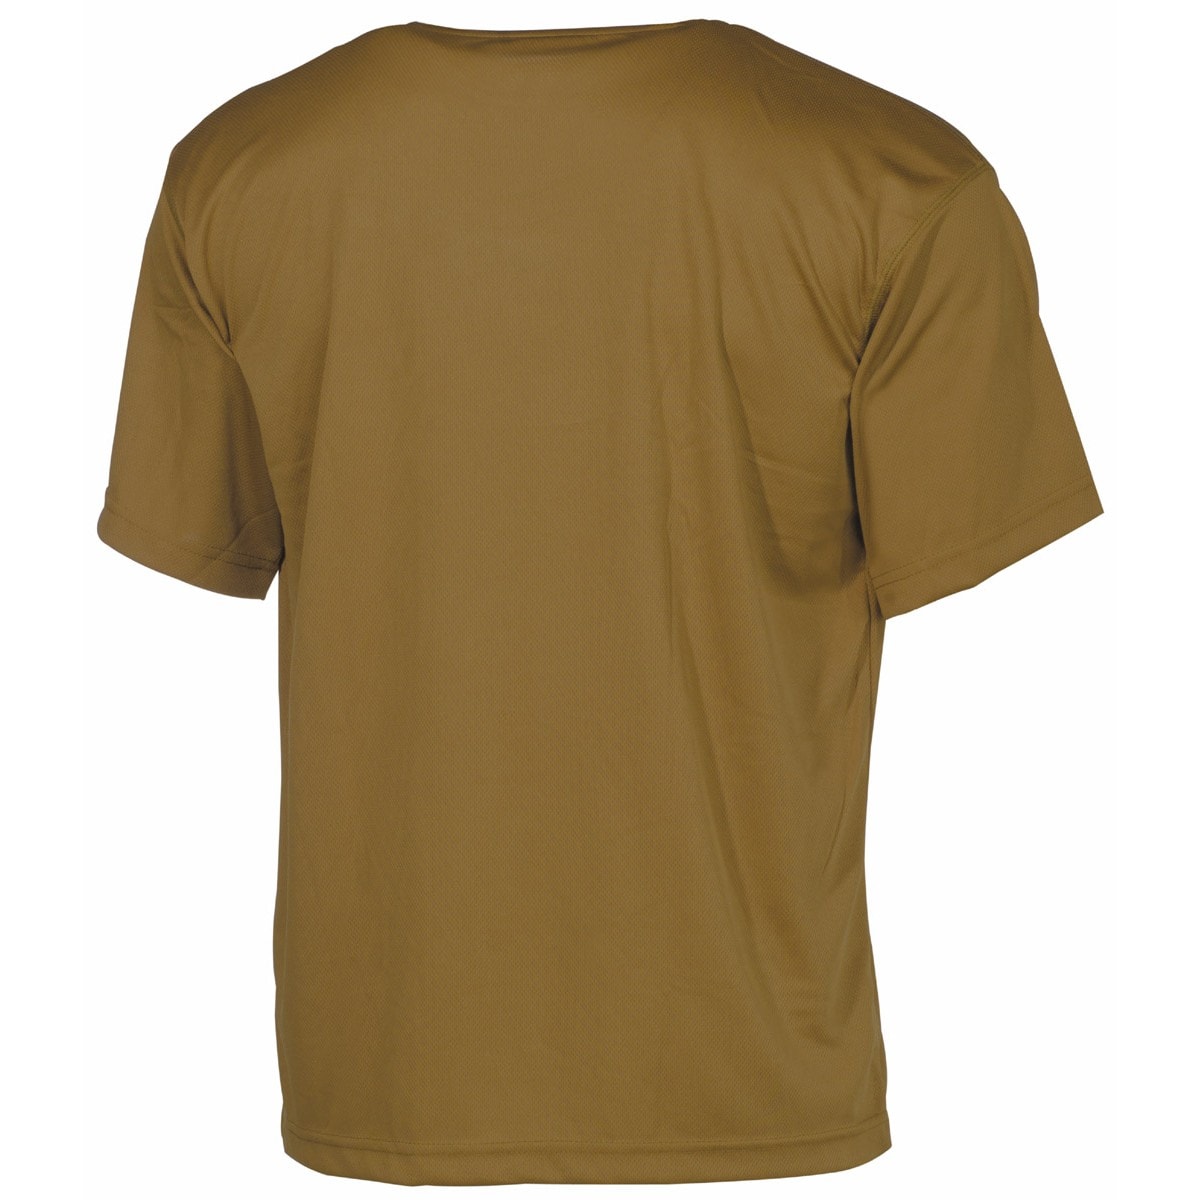 Футболка T-shirt MFH Tactical - Coyote Tan